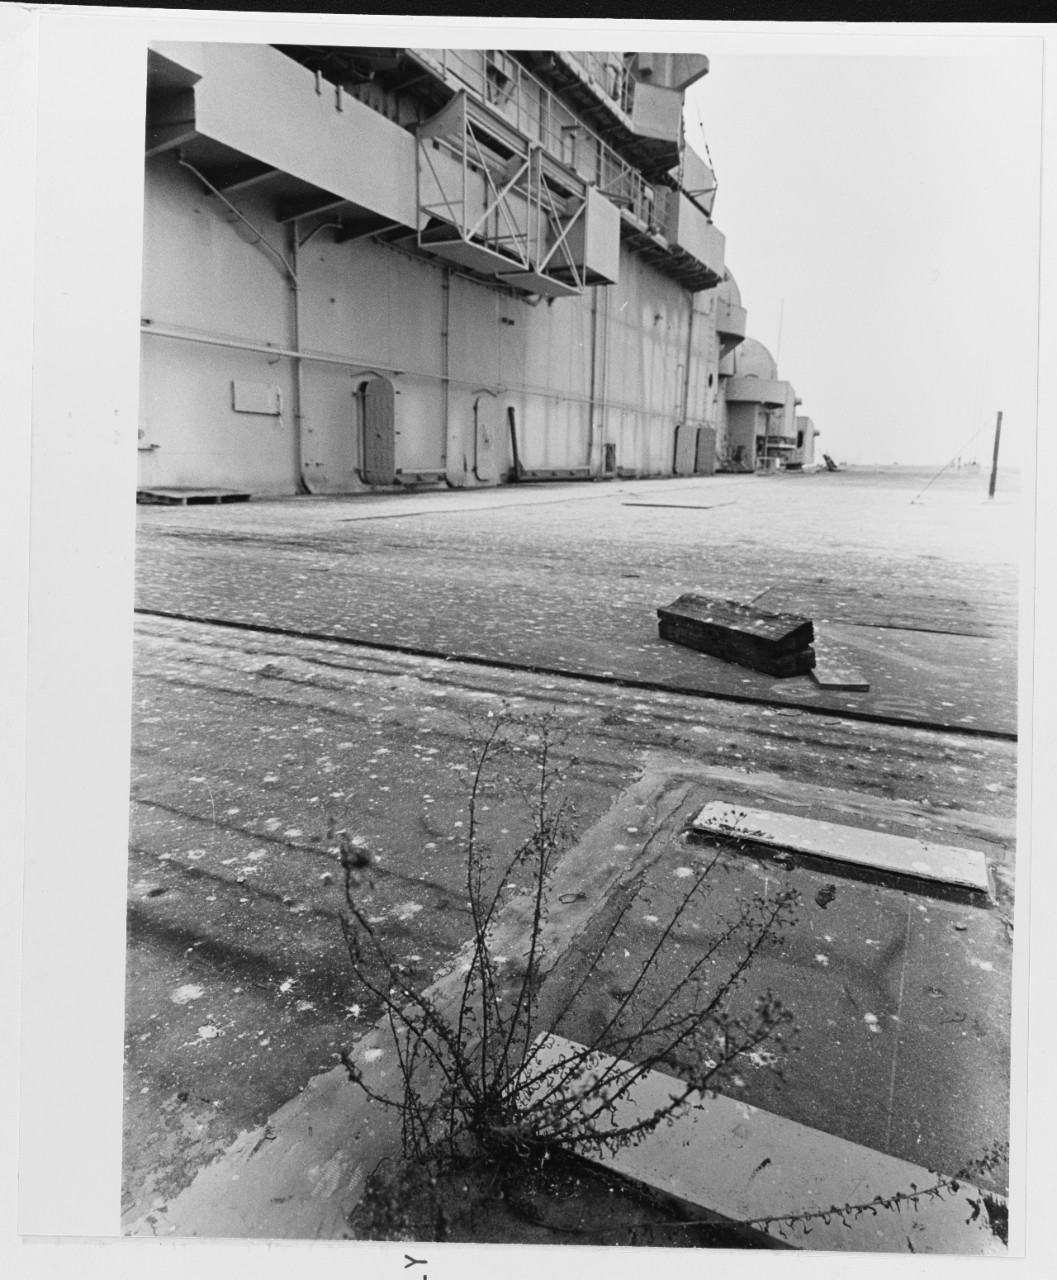 Ex-USS BUNKER HILL (CV-17)